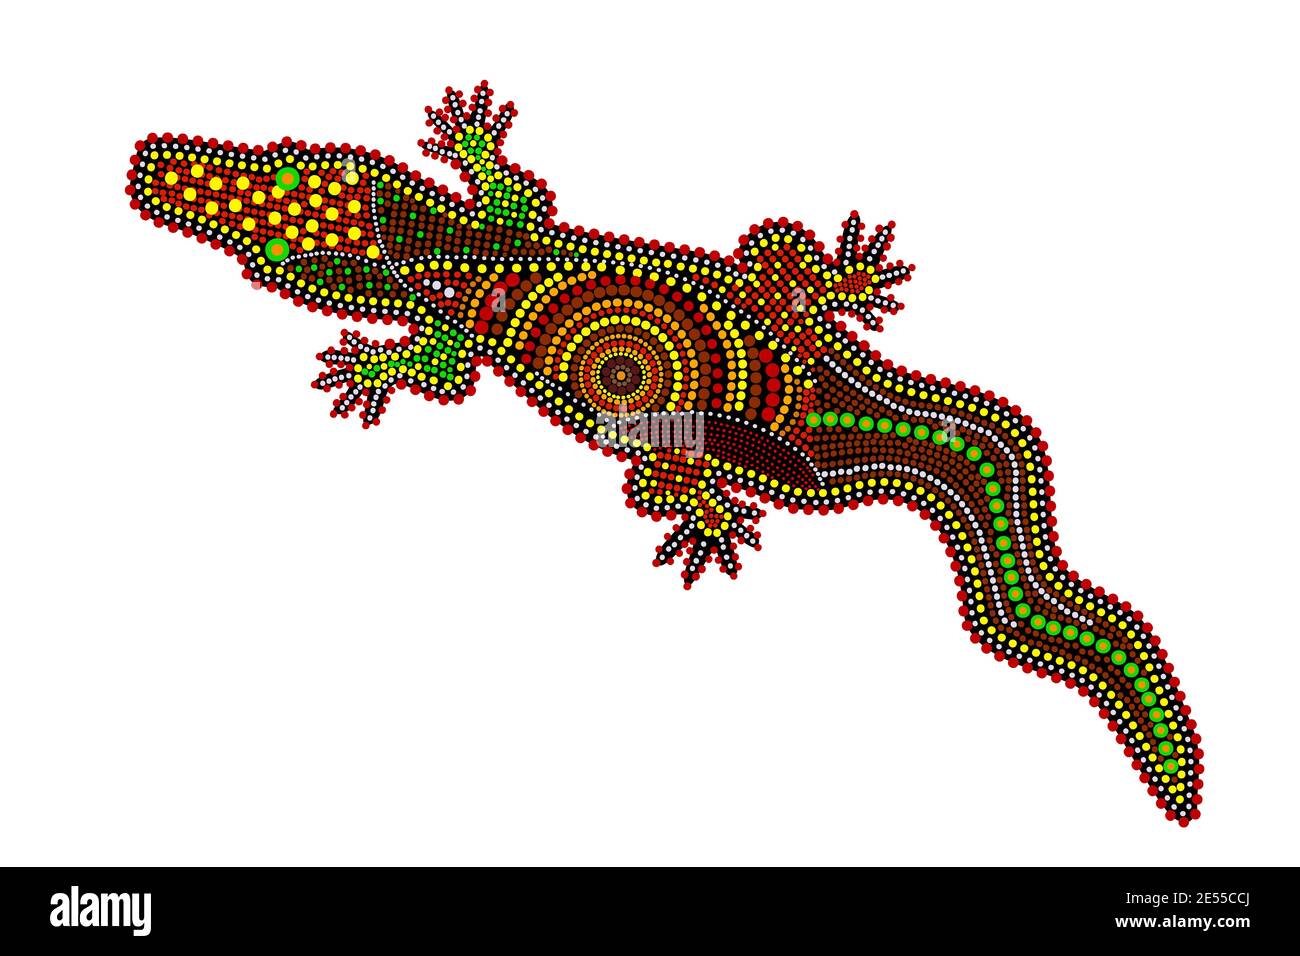 Crocodile isolé sur fond blanc. Australie peinture à pois crocodile aborigène. Alligator aborigène. Style ethnique décoratif.vecteur de stock Illustration de Vecteur